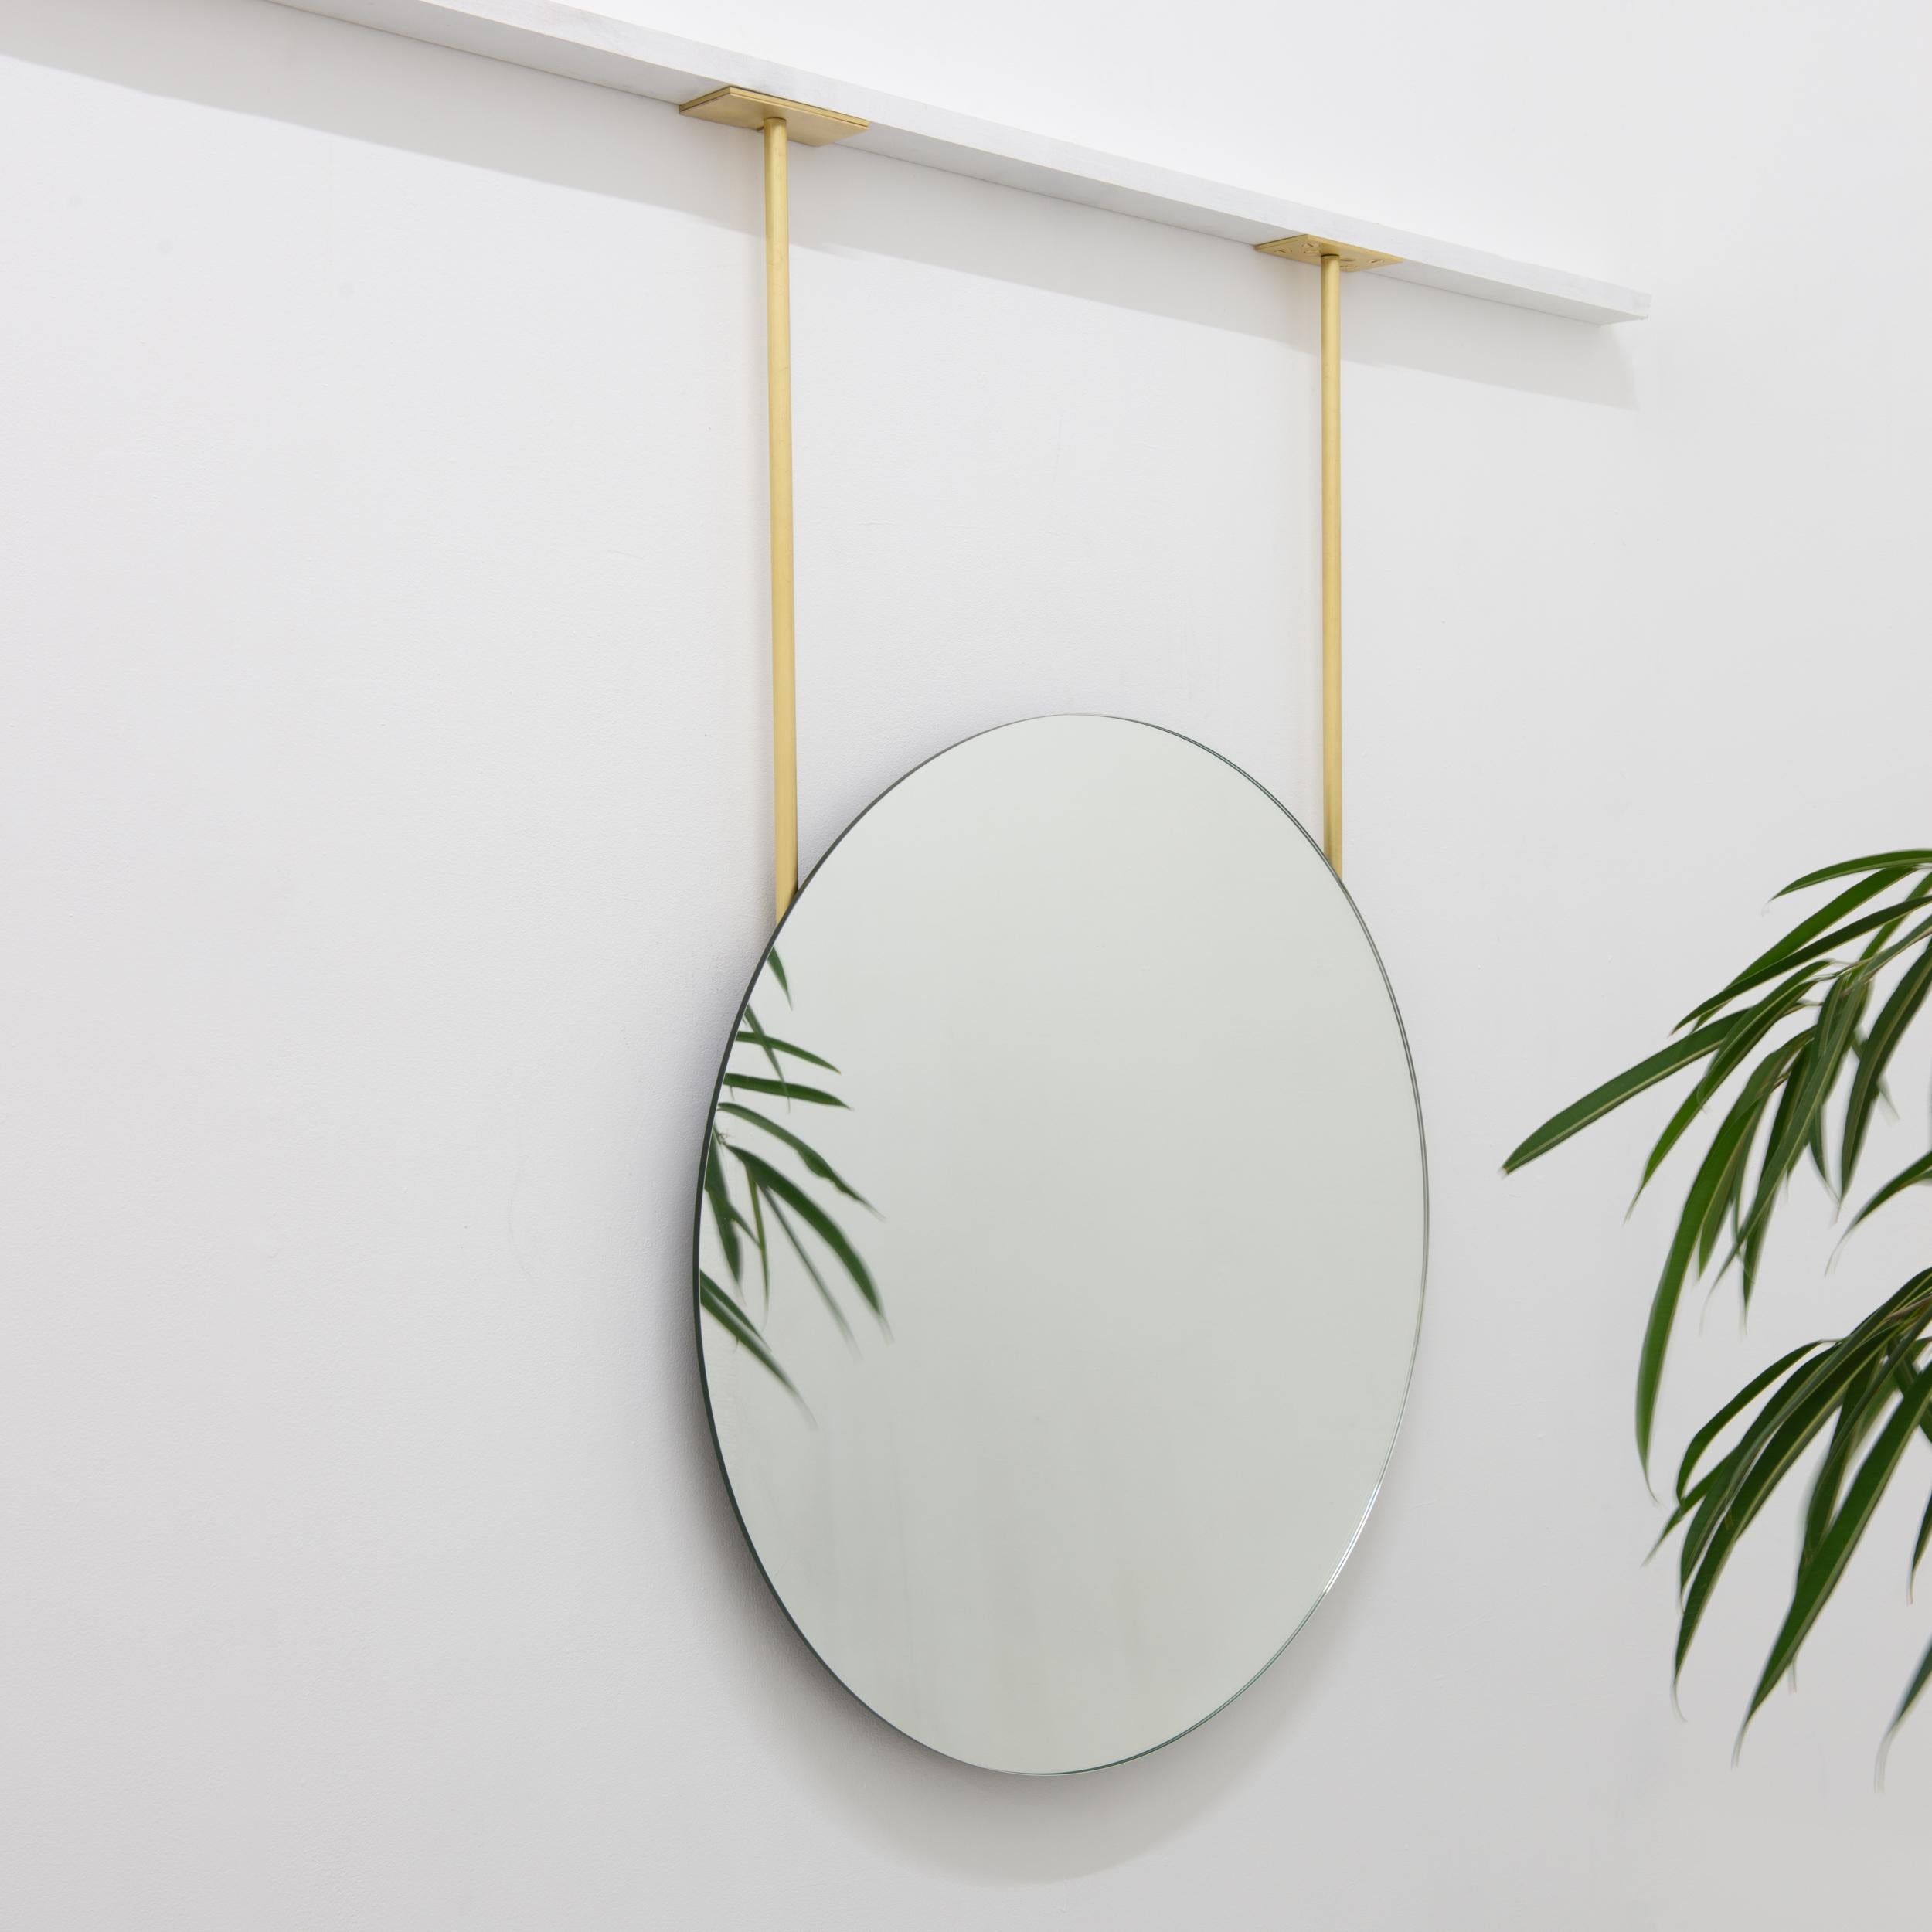 Exquisite und minimalistische moderne Decke hängenden runden rahmenlosen Spiegel.

600mm (23.62